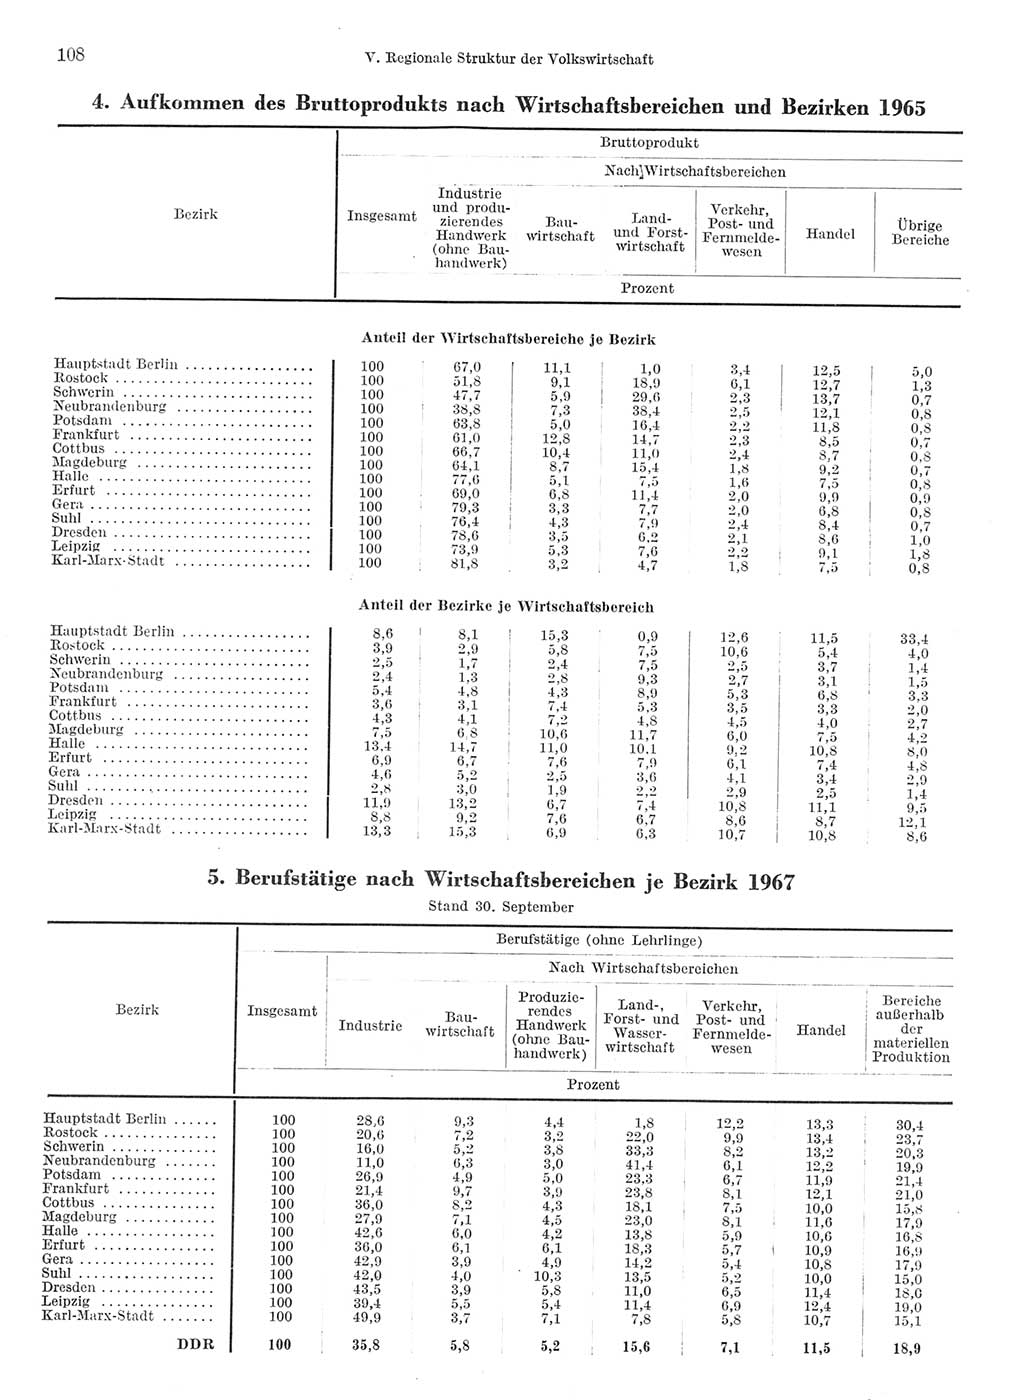 Statistisches Jahrbuch der Deutschen Demokratischen Republik (DDR) 1968, Seite 108 (Stat. Jb. DDR 1968, S. 108)